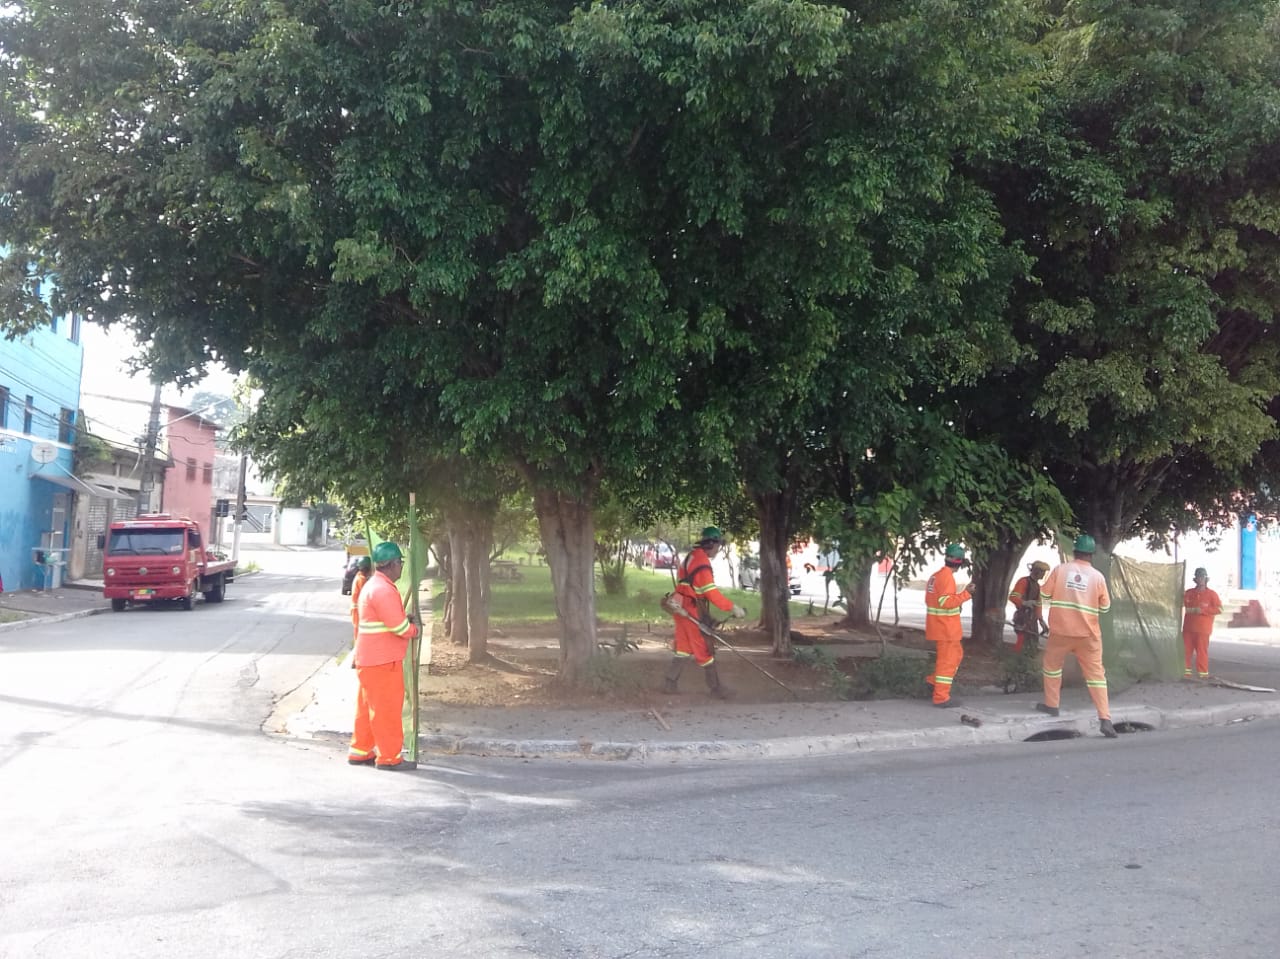 #PraCegoVer - Trabalhadores da Subprefeitura cortam grama no jardim da via. Outros seguram proteção de tela. O local tem árvores bem frondosas.